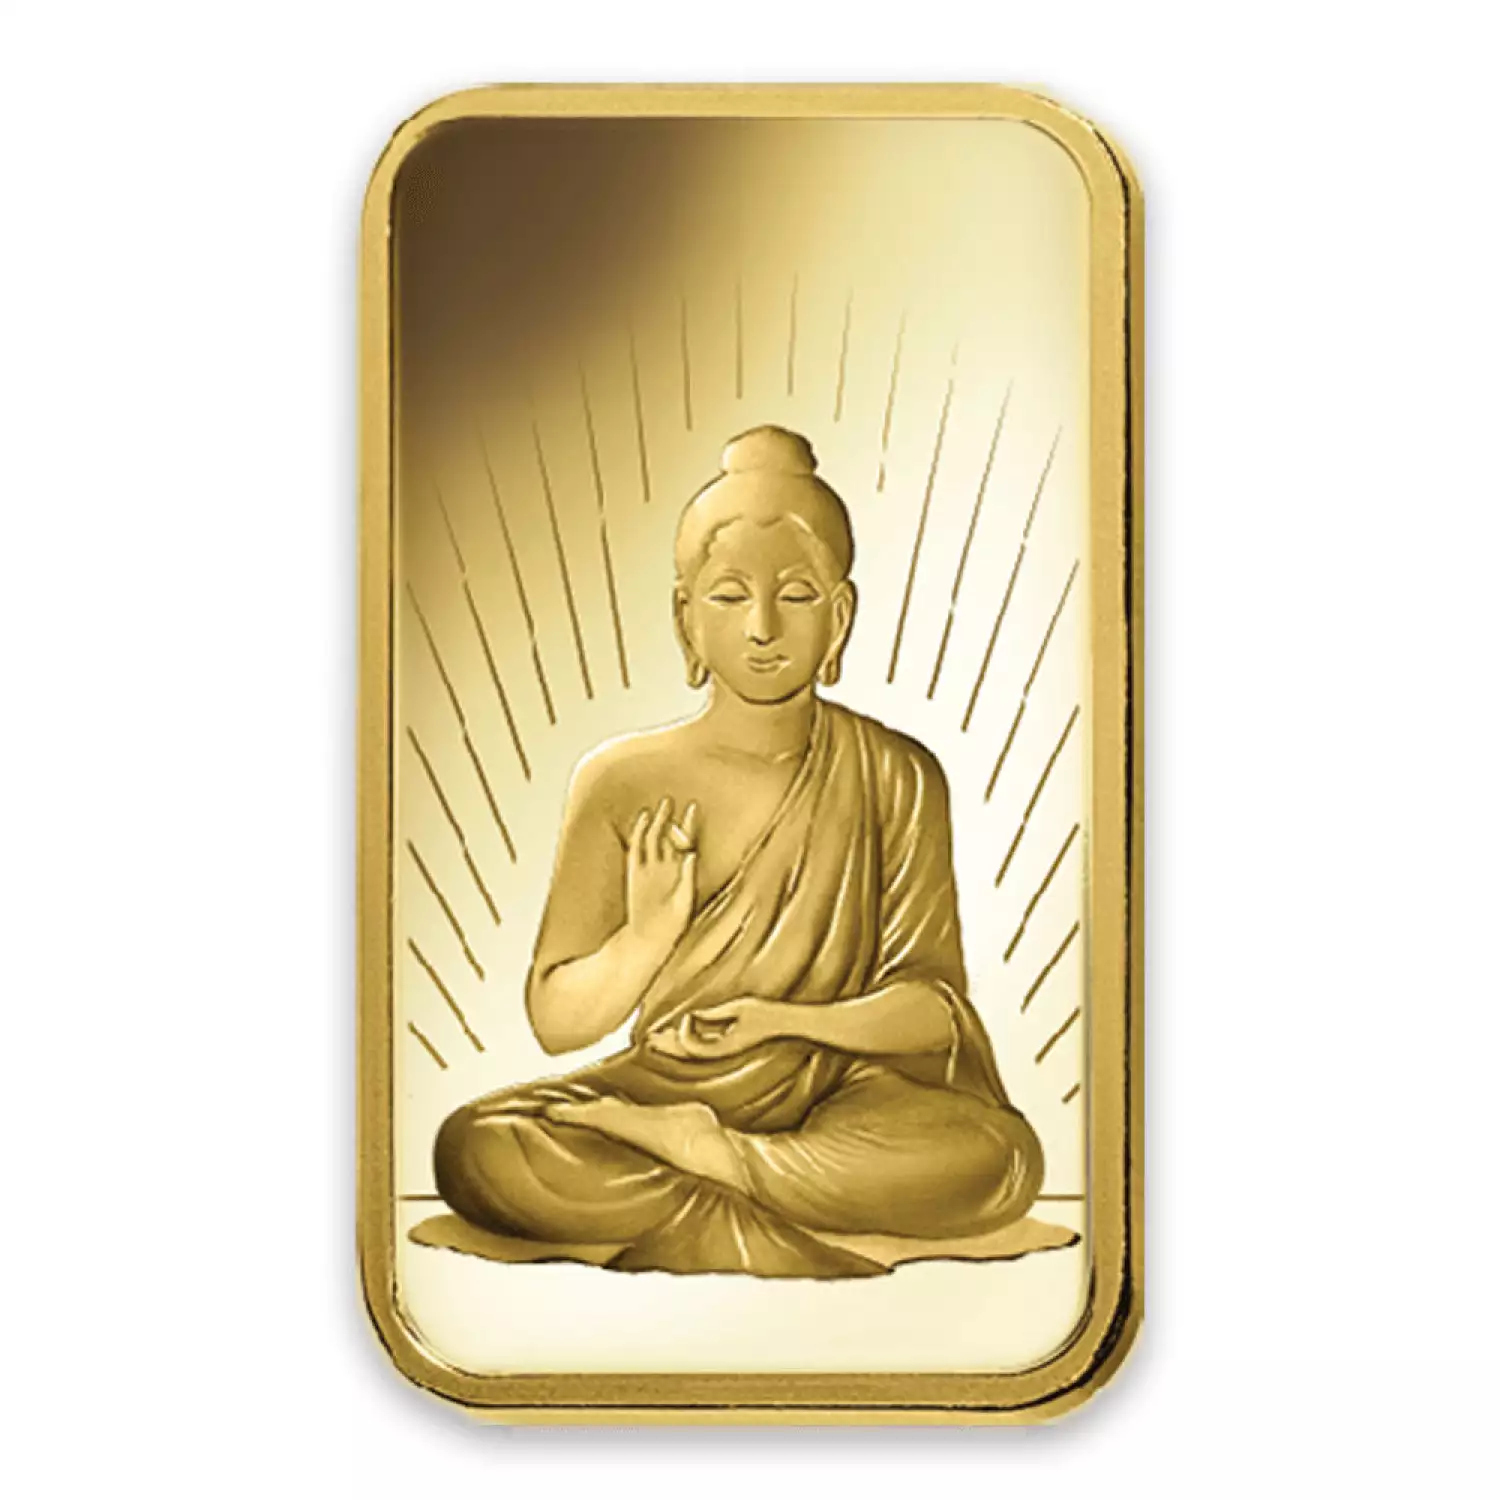 1oz PAMP Gold Bar - Buddha